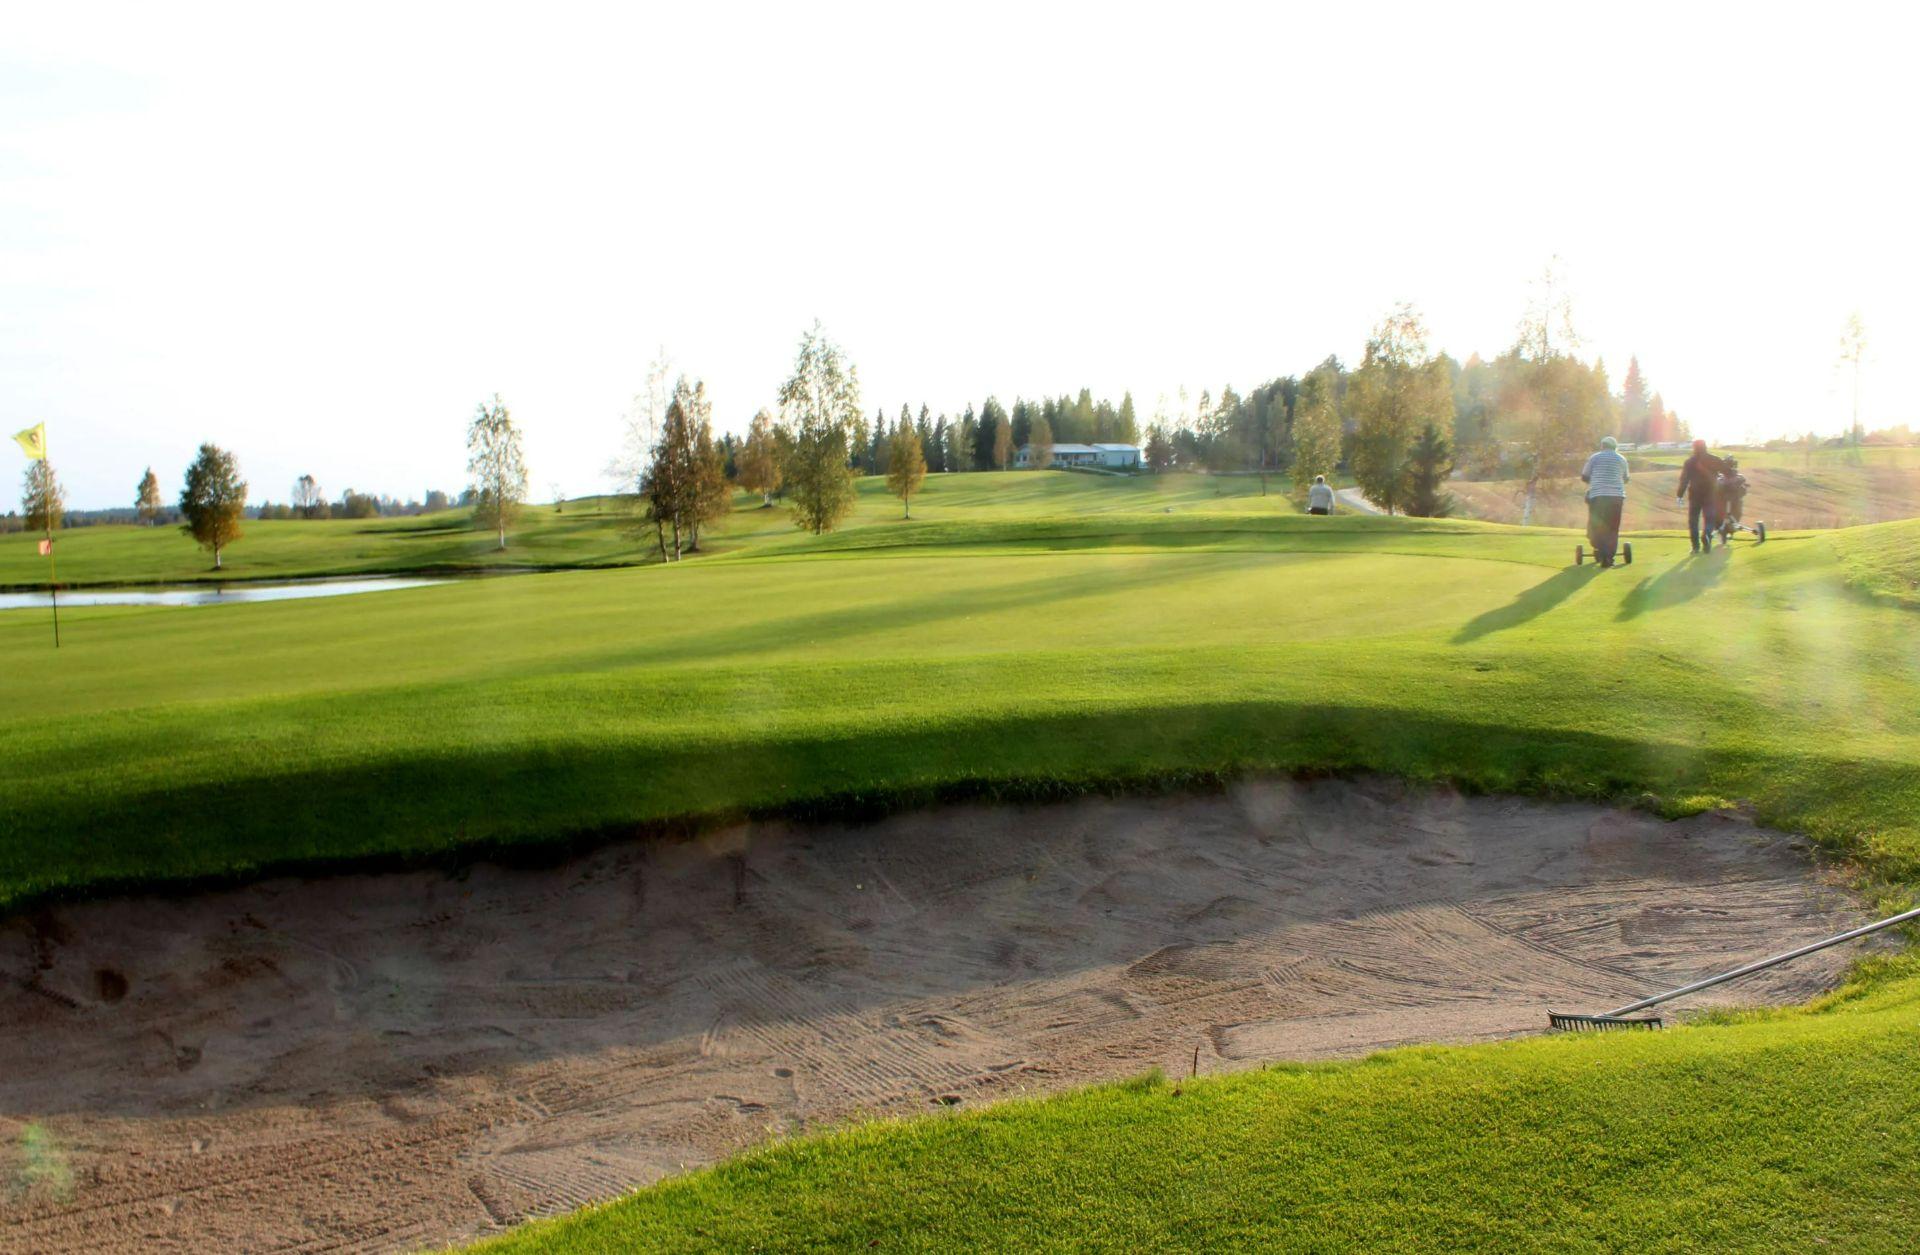 Ylä-Savon Golfseura 2. kuva – Golfpiste Kenttäopas – Suomi